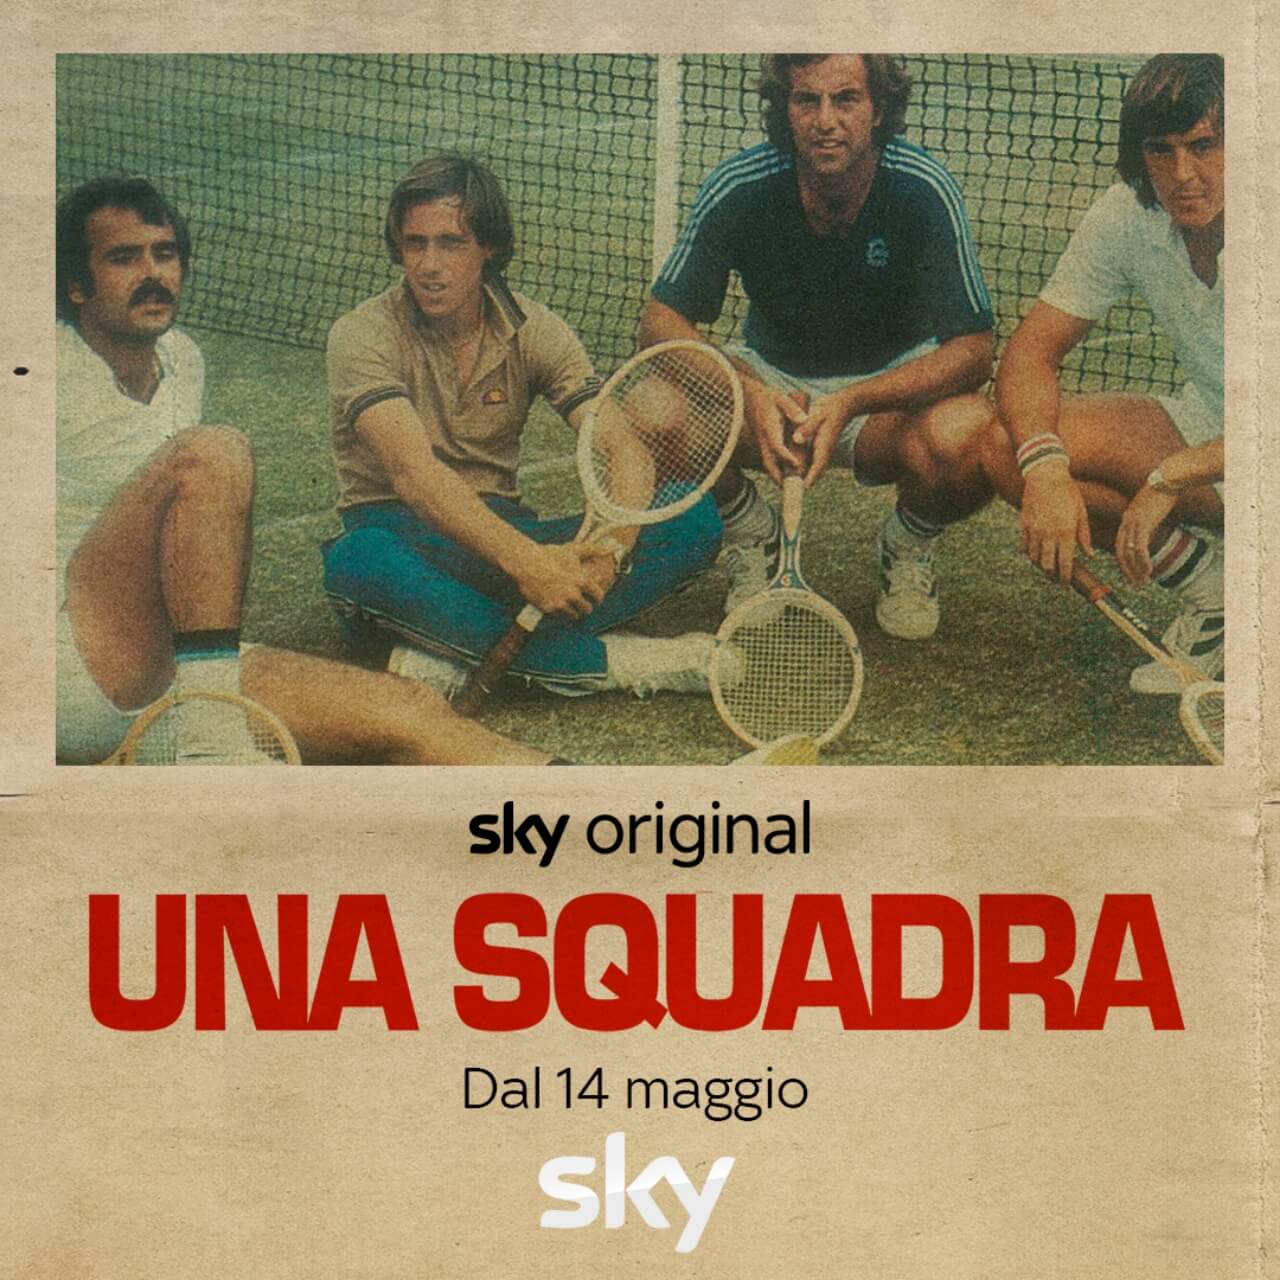 Game Set Match con l’Italia della Davis 1976 - Una squadra iconica, una campagna